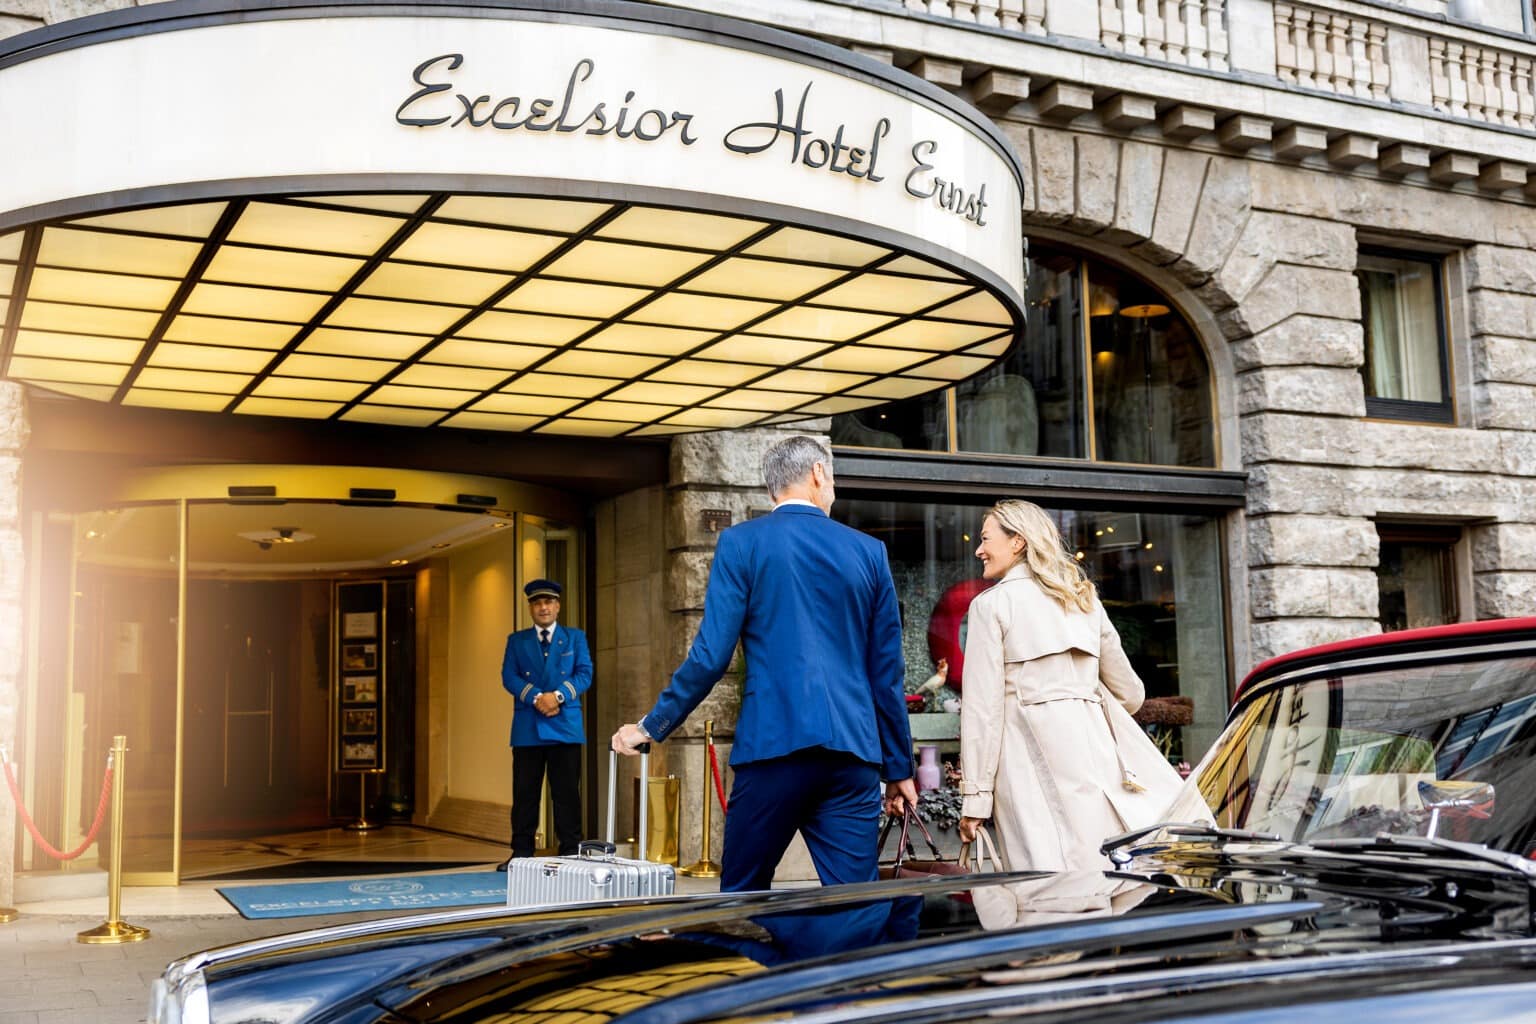 excelsior hotel ernst ankunft bestager 31 1536x1024 1